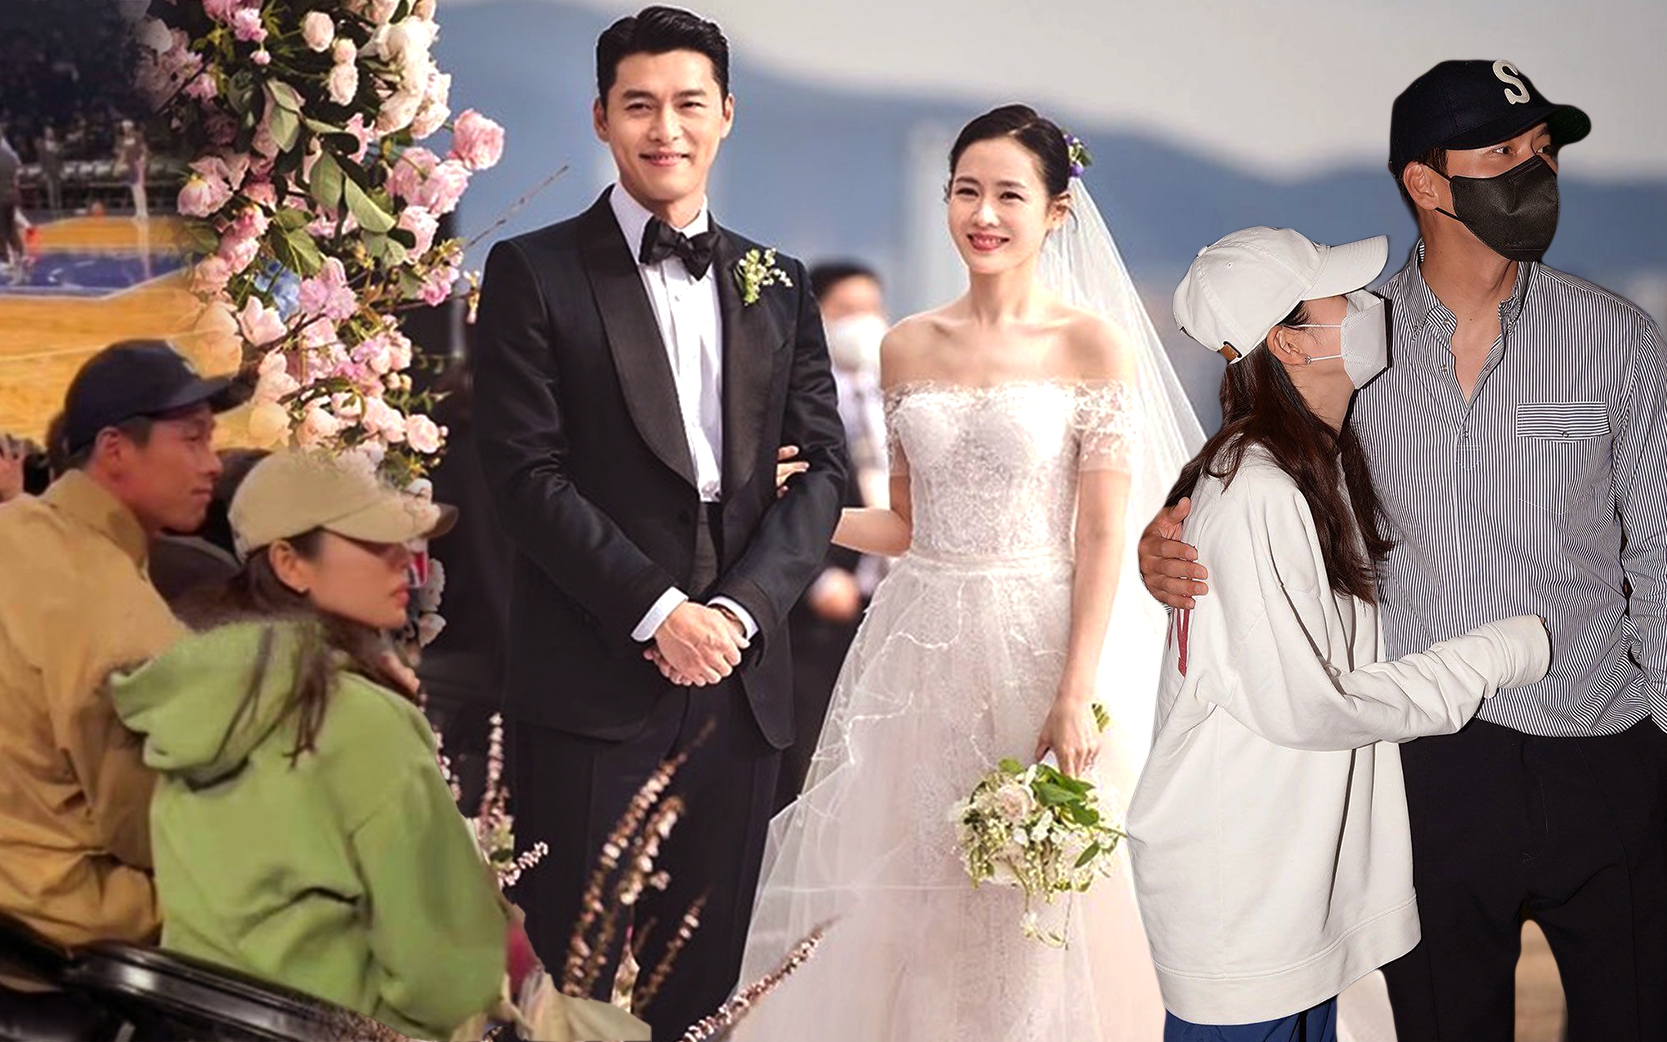 Nhìn lại đám cưới Hyun Bin - Son Ye Jin sau tròn 1 tháng: Trở thành cặp vợ chồng thế kỷ được cả thế giới săn đón, nhưng người trong cuộc liệu có thoải mái?